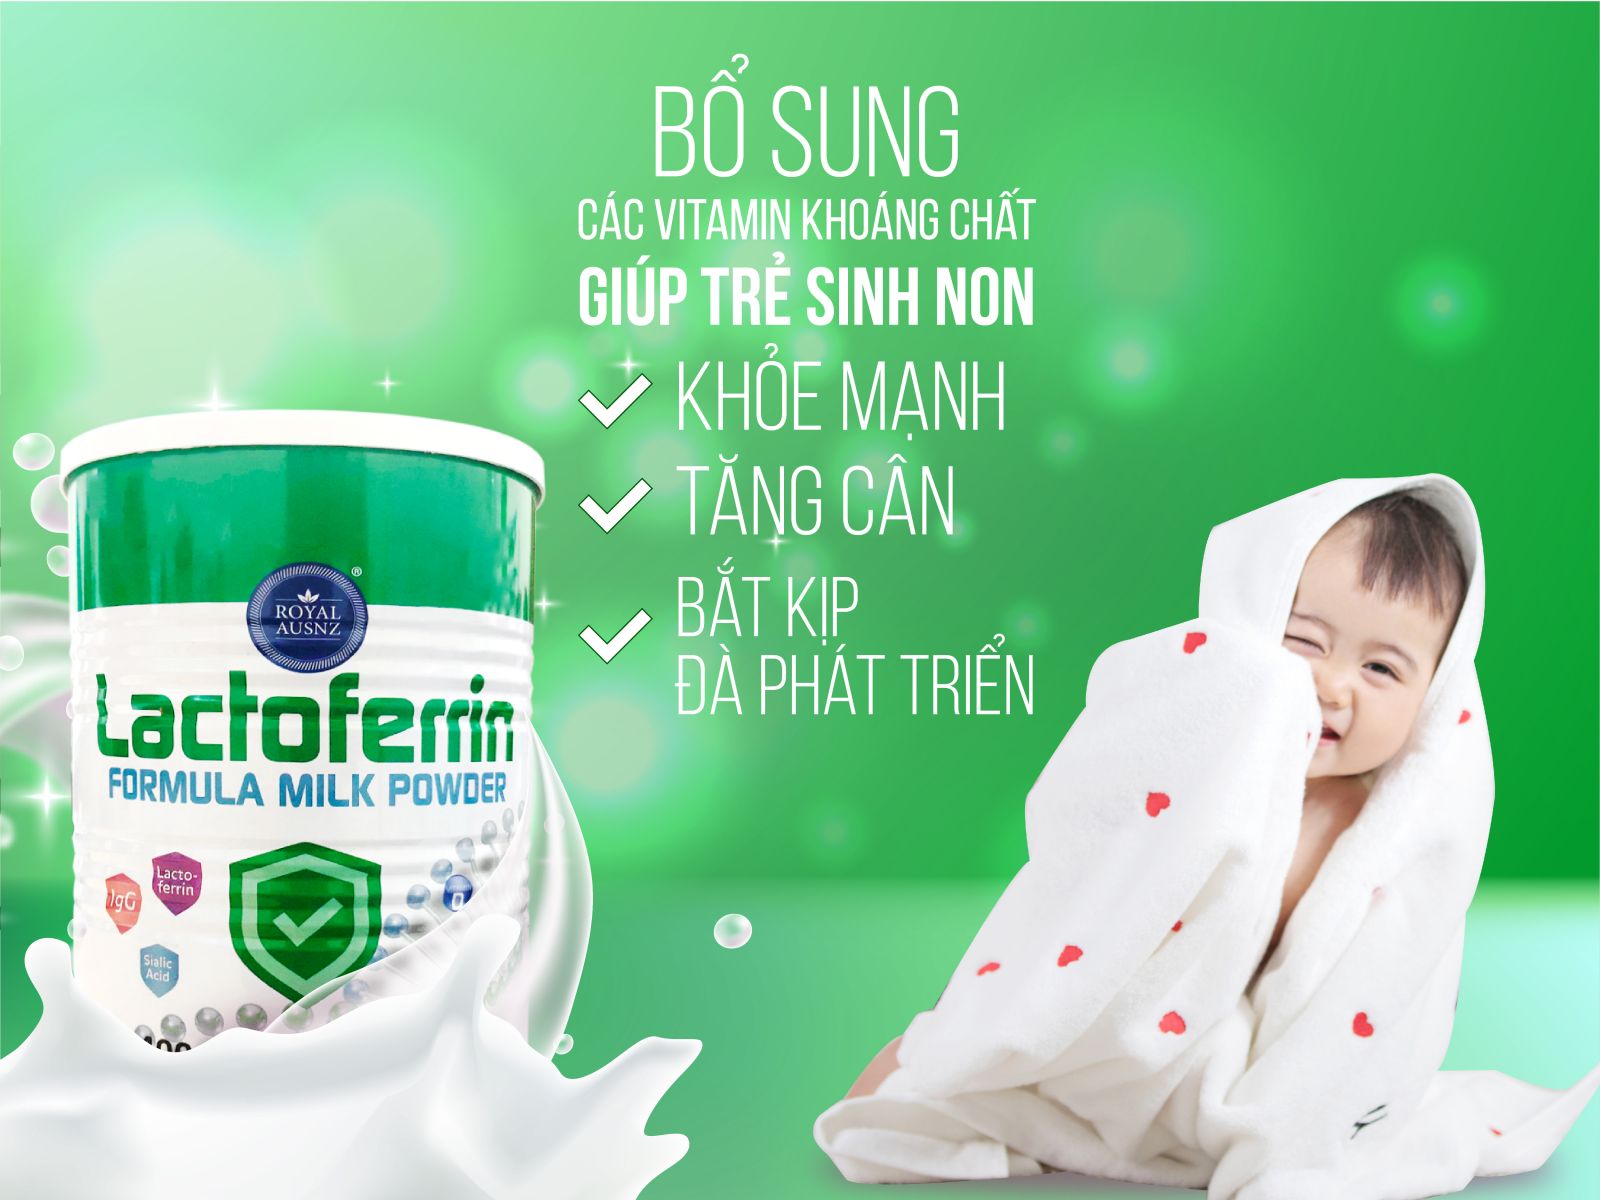 Lactoferrin Xanh là dòng sữa non được nhiều cha mẹ tin tưởng và lựa chọn cho bé 2 tuổi